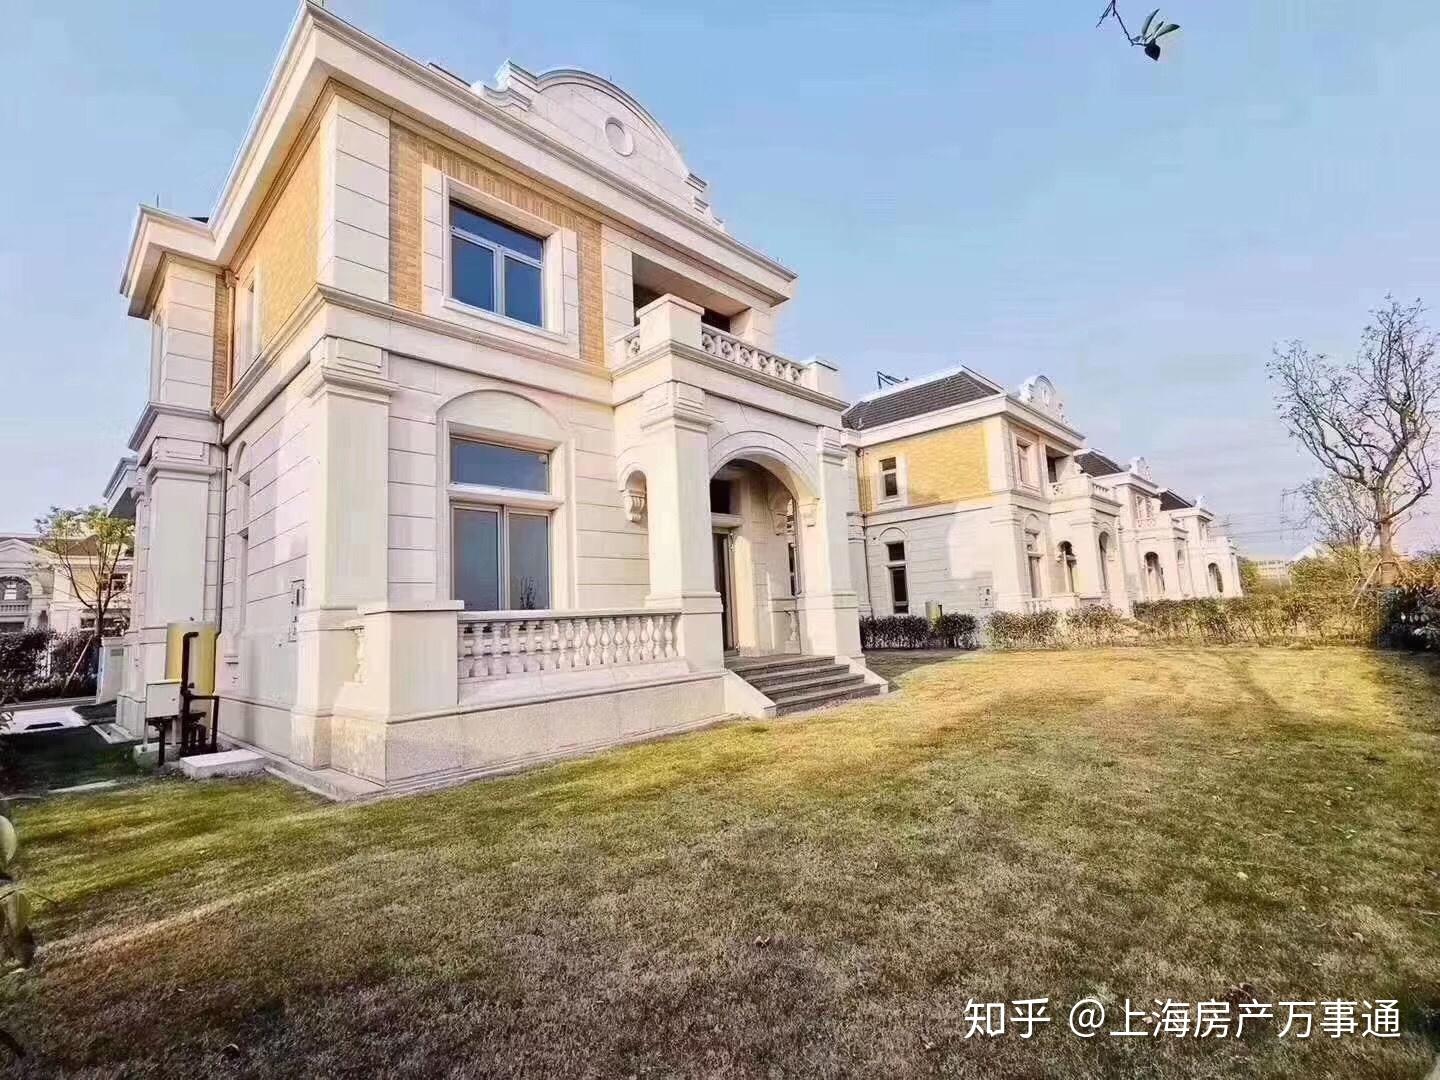 上海500平米别墅图片